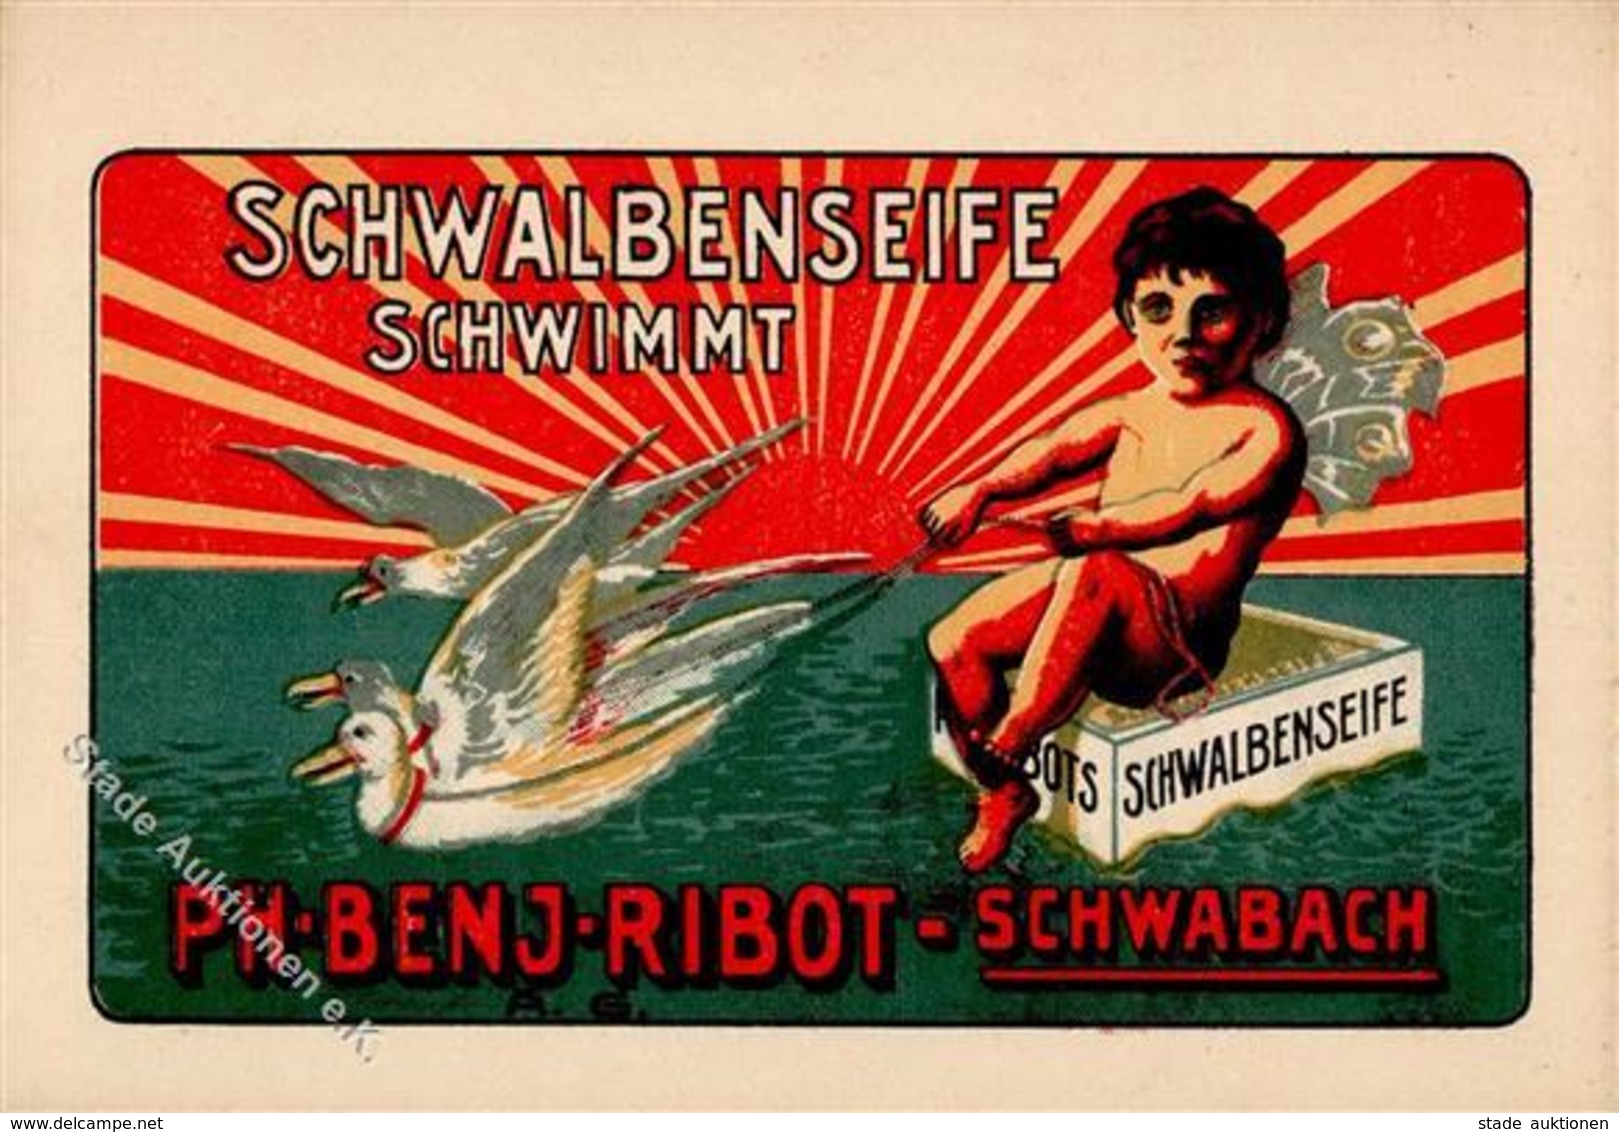 Werbung Kosmetik Schwabach (8540) Schwalbenseife Ph. Benj. Ribot Werbe AK I-II Publicite - Werbepostkarten